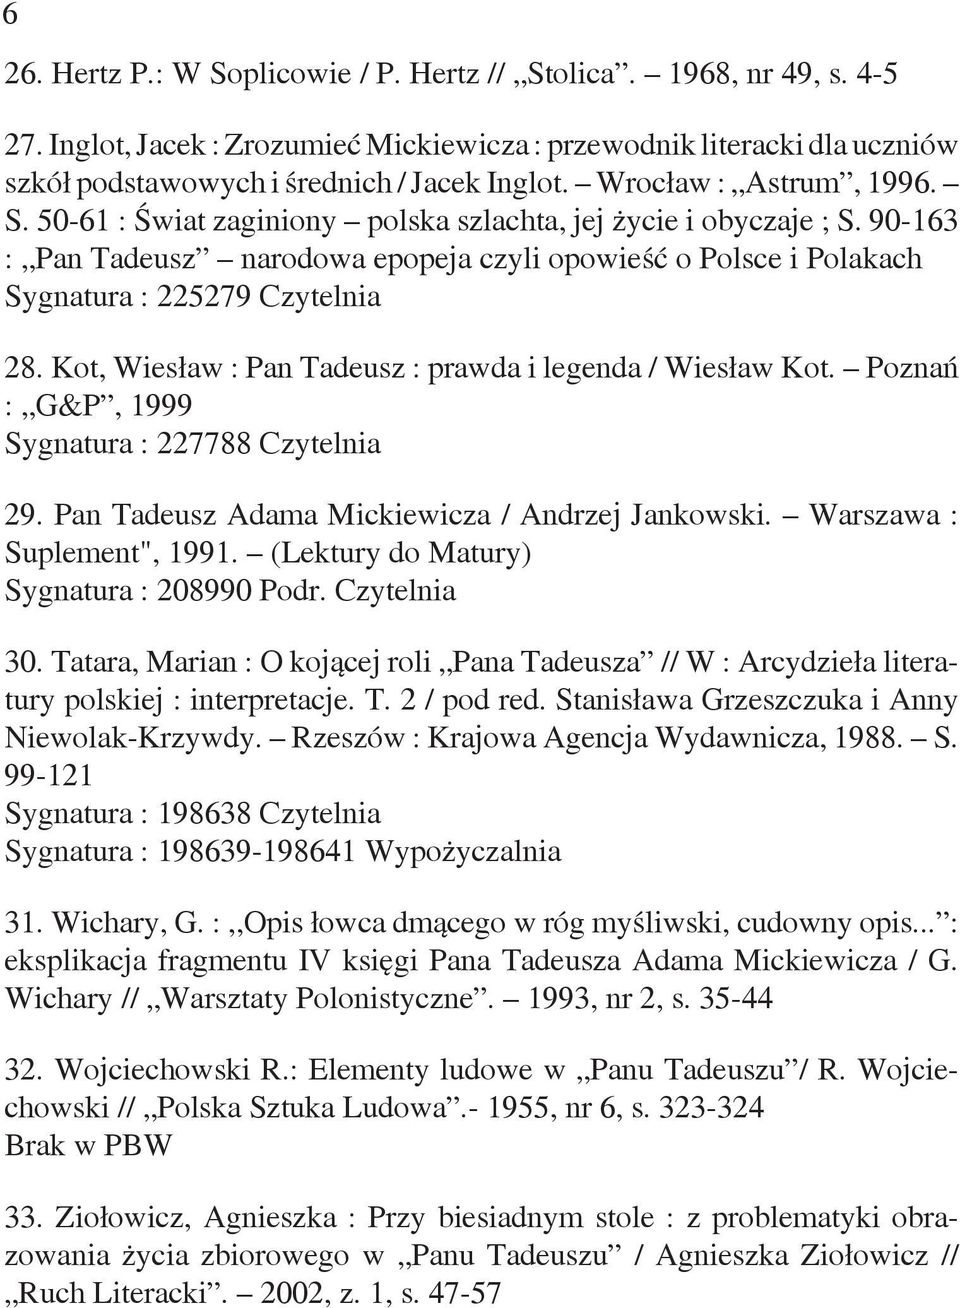 Kot, Wiesław : Pan Tadeusz : prawda i legenda / Wiesław Kot. Poznań : G&P, 1999 Sygnatura : 227788 Czytelnia 29. Pan Tadeusz Adama Mickiewicza / Andrzej Jankowski. Warszawa : Suplement", 1991.